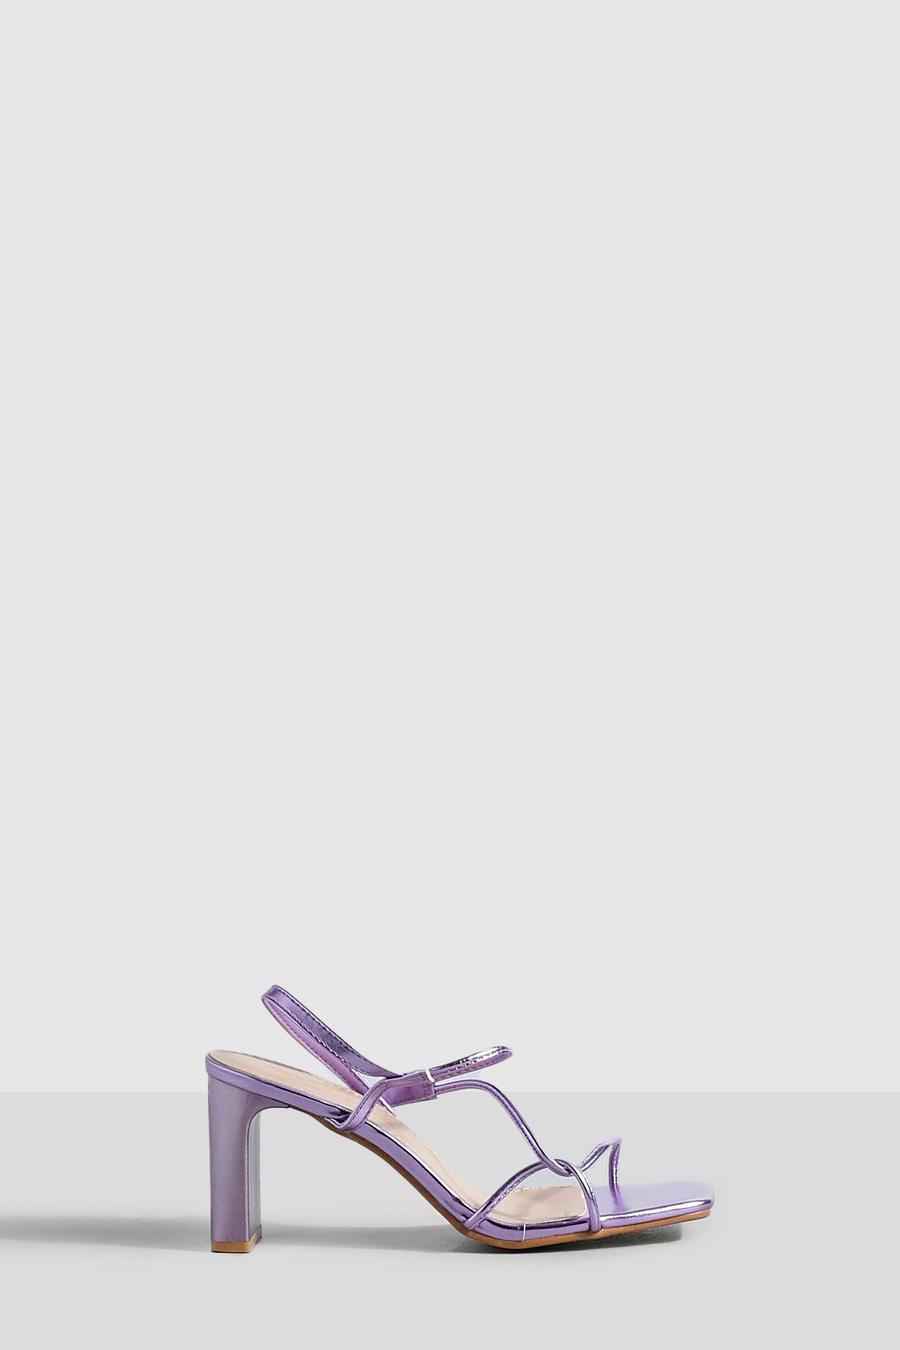 Sandales métallisées à petit talon carré, Lilac